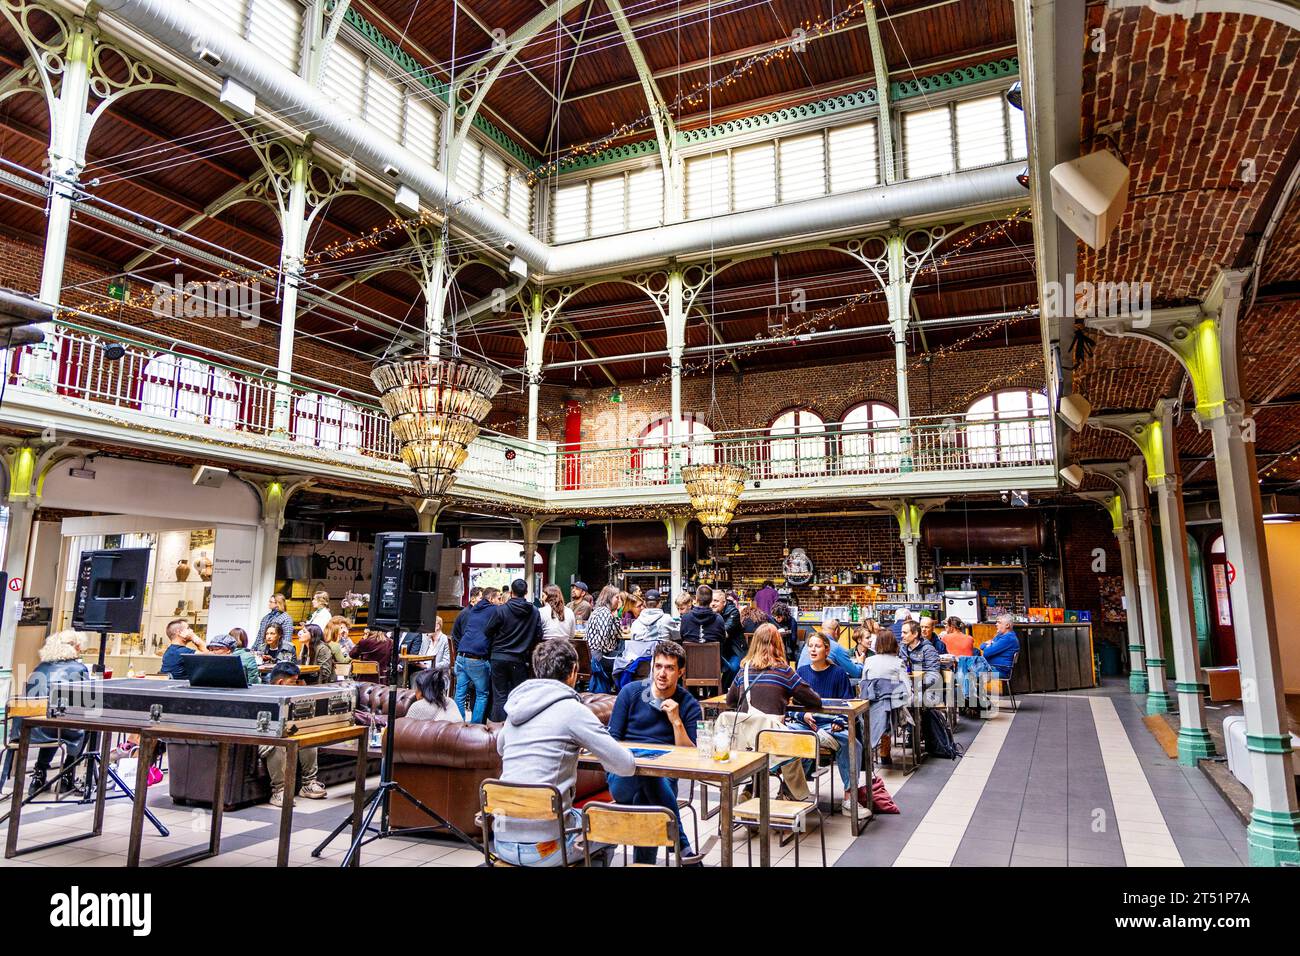 Nel XIX secolo, le sale del mercato di Halles Saint-Géry sono state trasformate in un bar e uno spazio espositivo, Bruxelles, Belgio Foto Stock